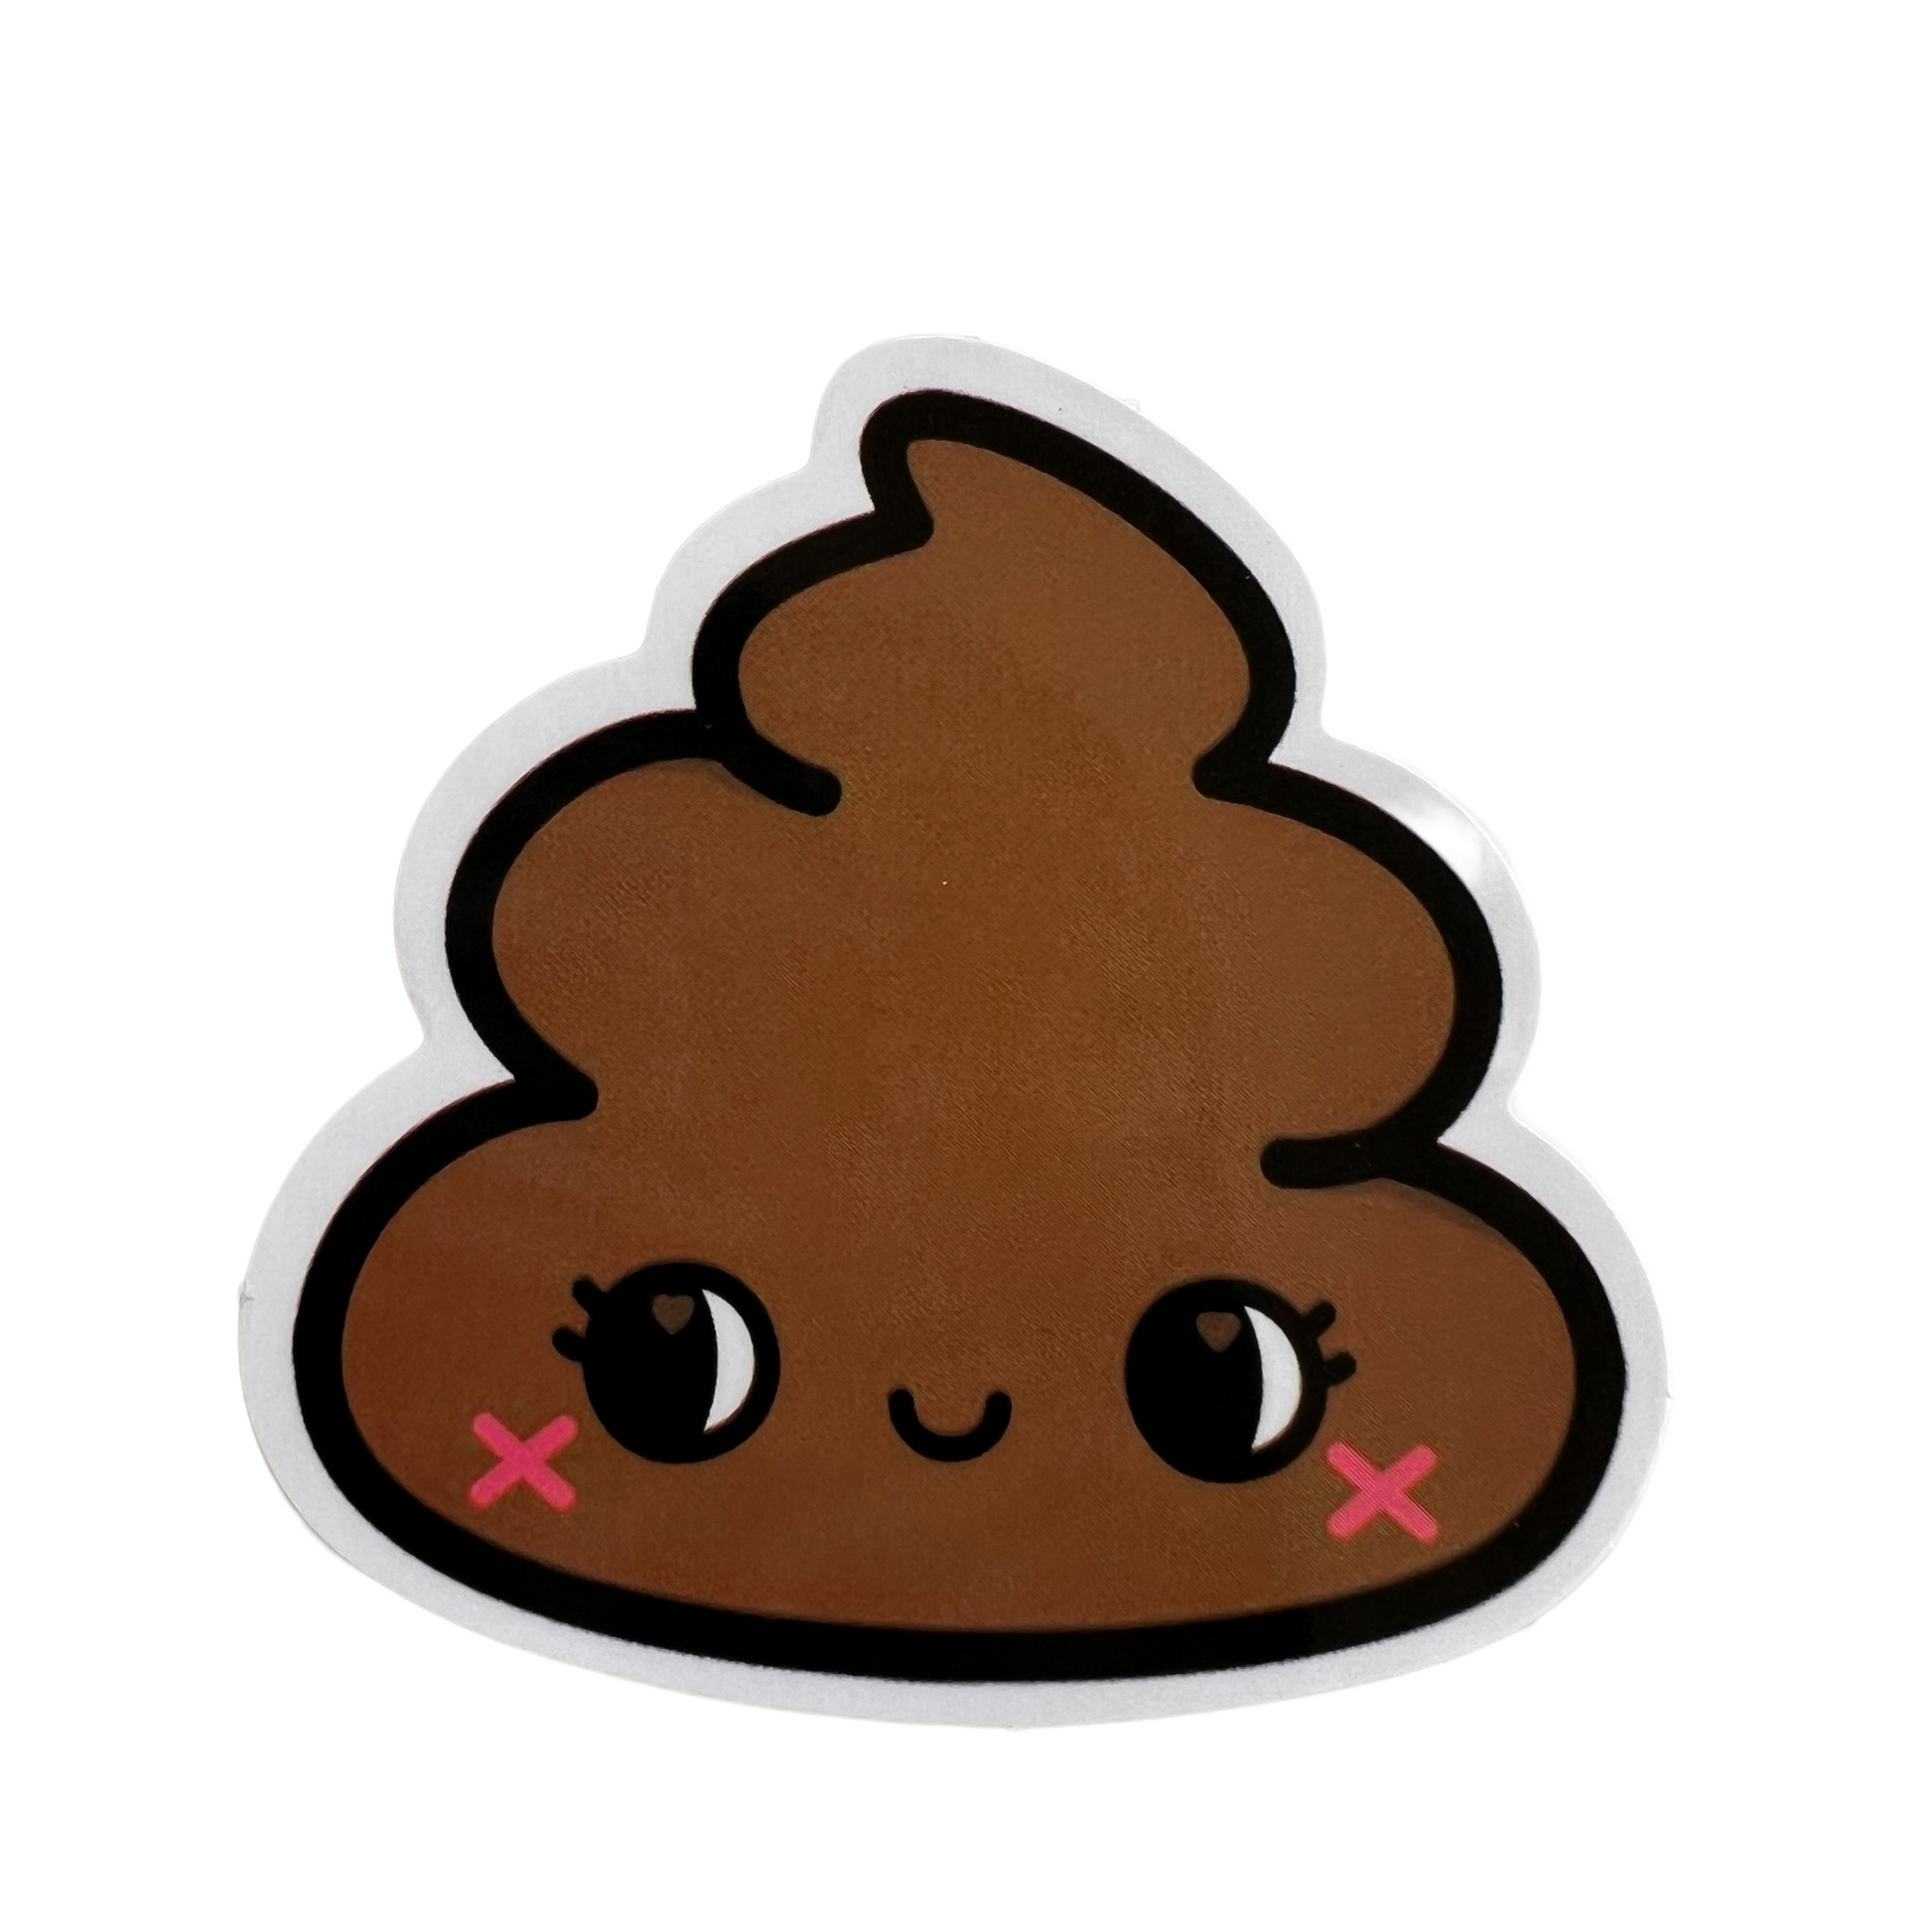 Poop Emoji Stickers Decorative Stickers SPIRIT SPARKPLUGS   